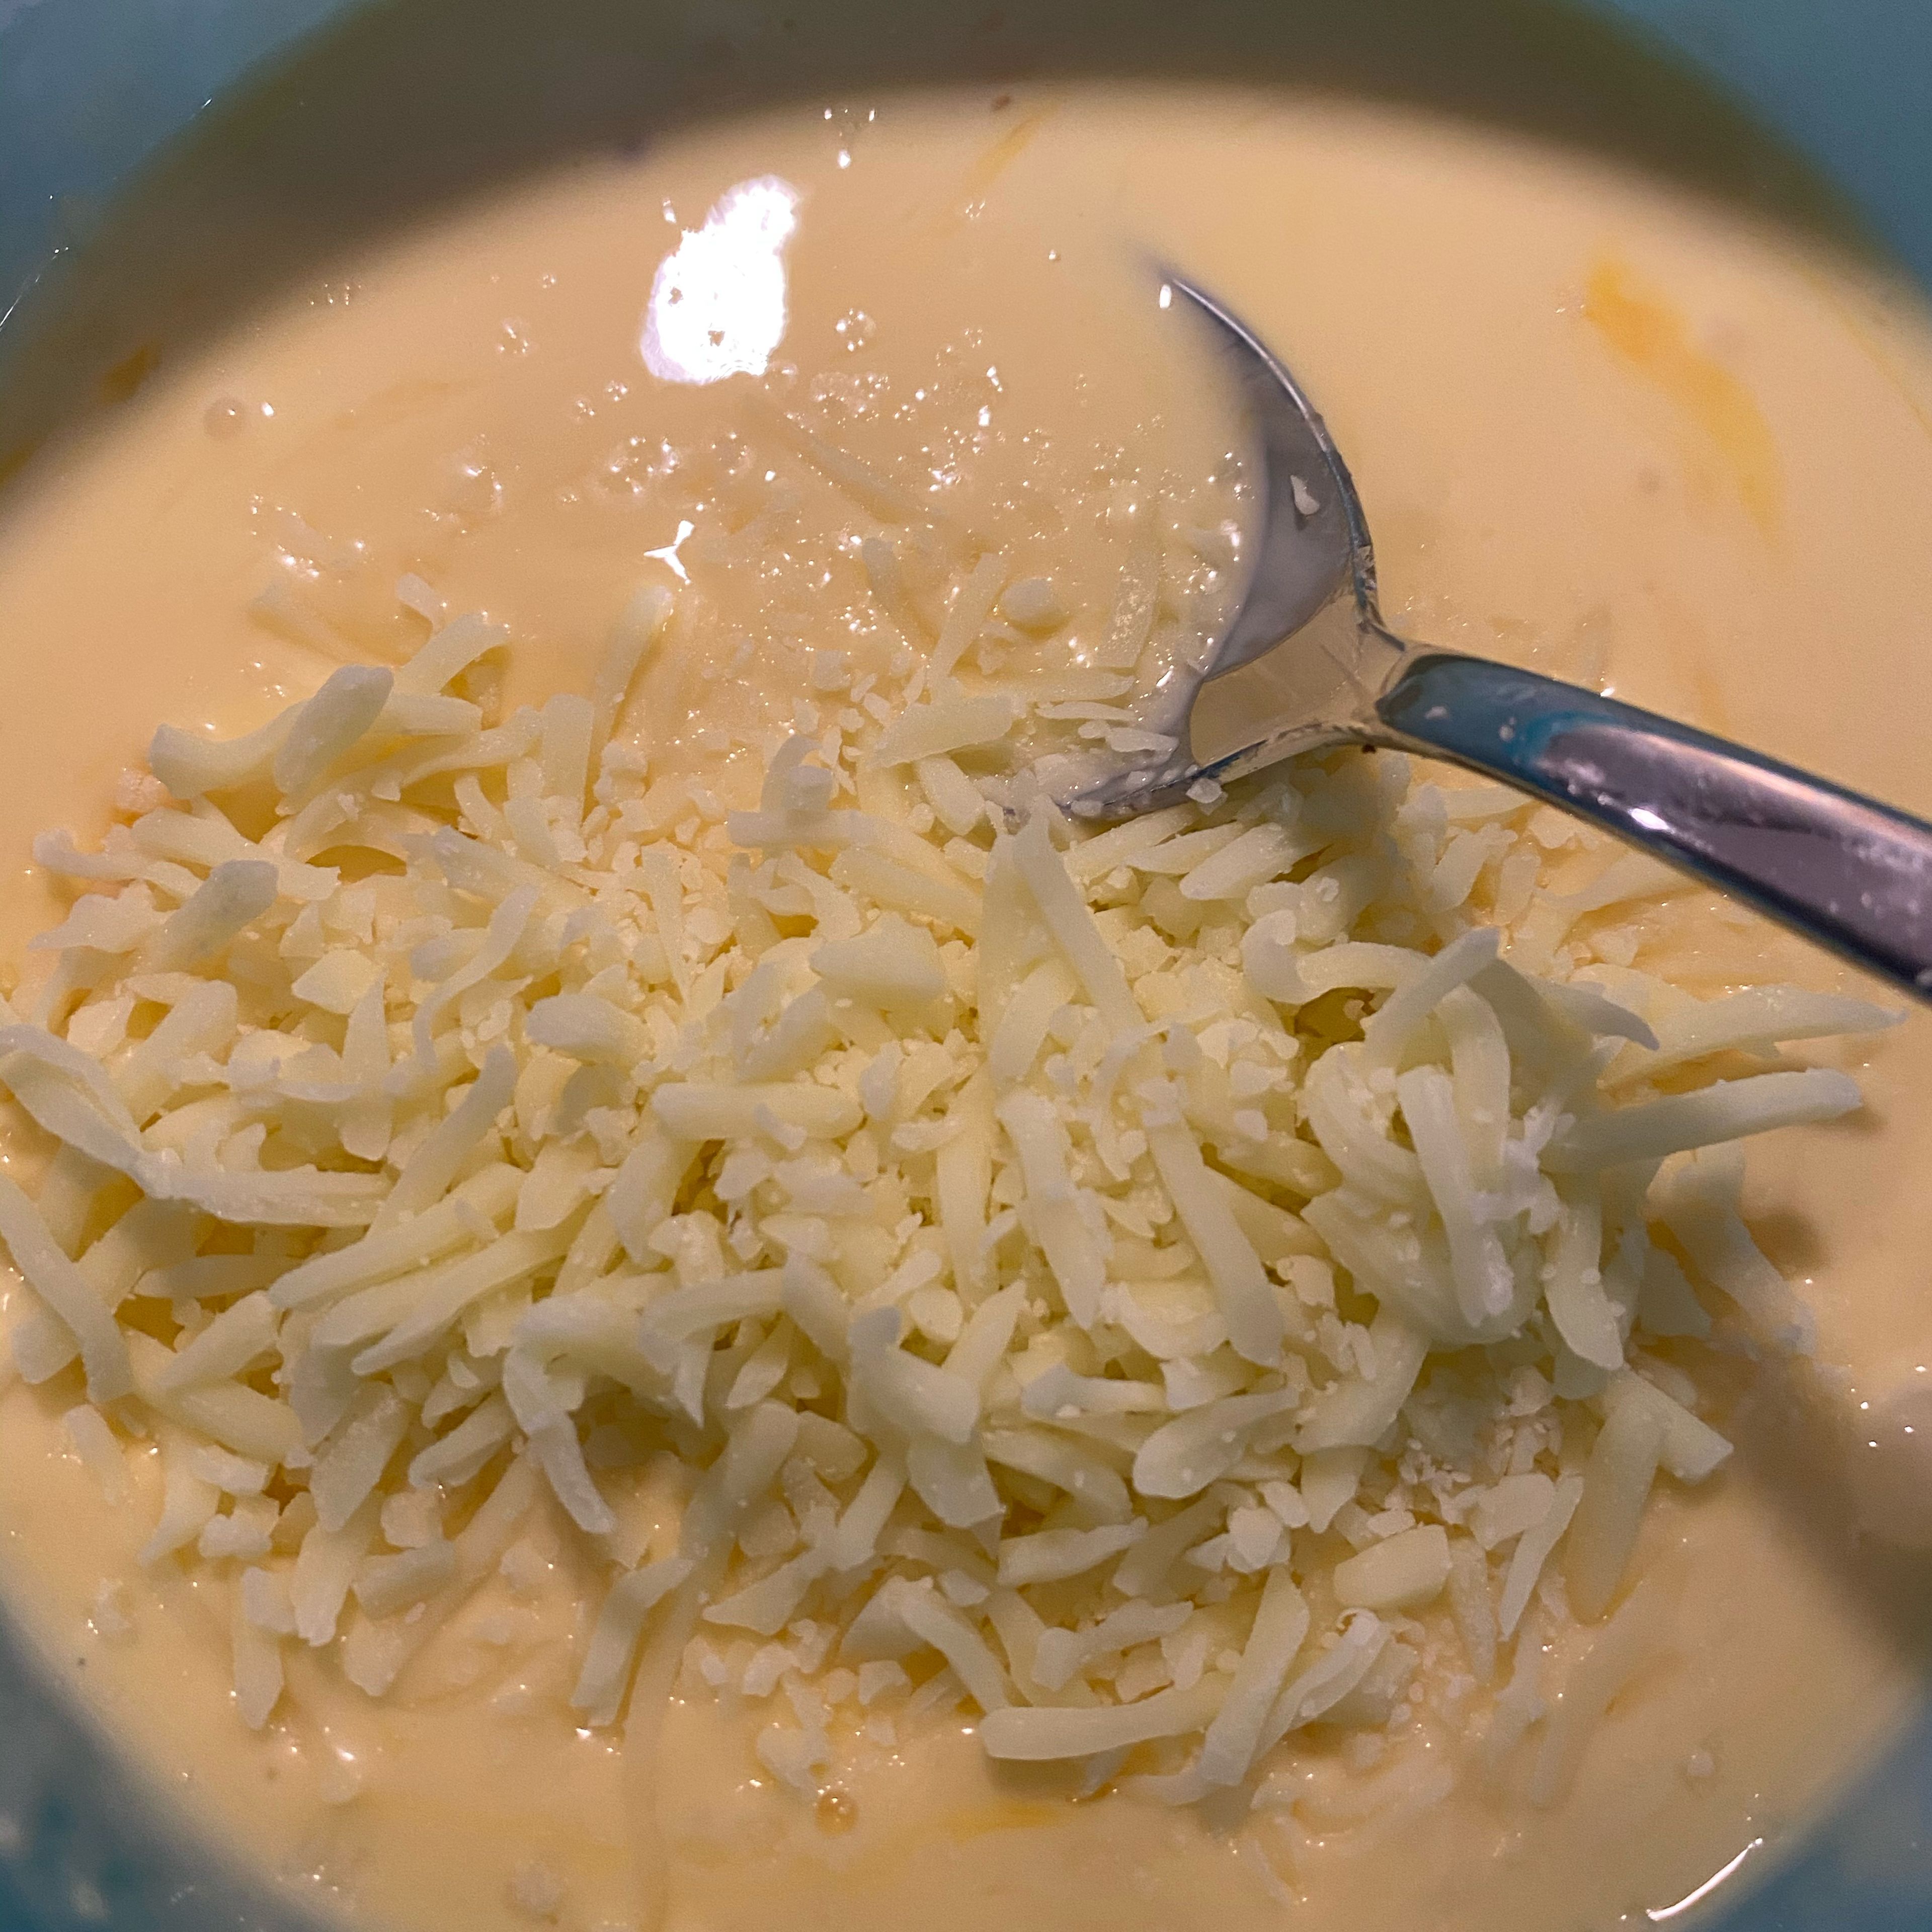 Für die „Soße“ alle Zutaten vermischen und den restlichen Käse mit unter die Masse heben. Sollte es eine zu dicke Masse sein, gerne noch einen Schuss Milch zugeben. Masse mit Salz & Pfeffer würzen.